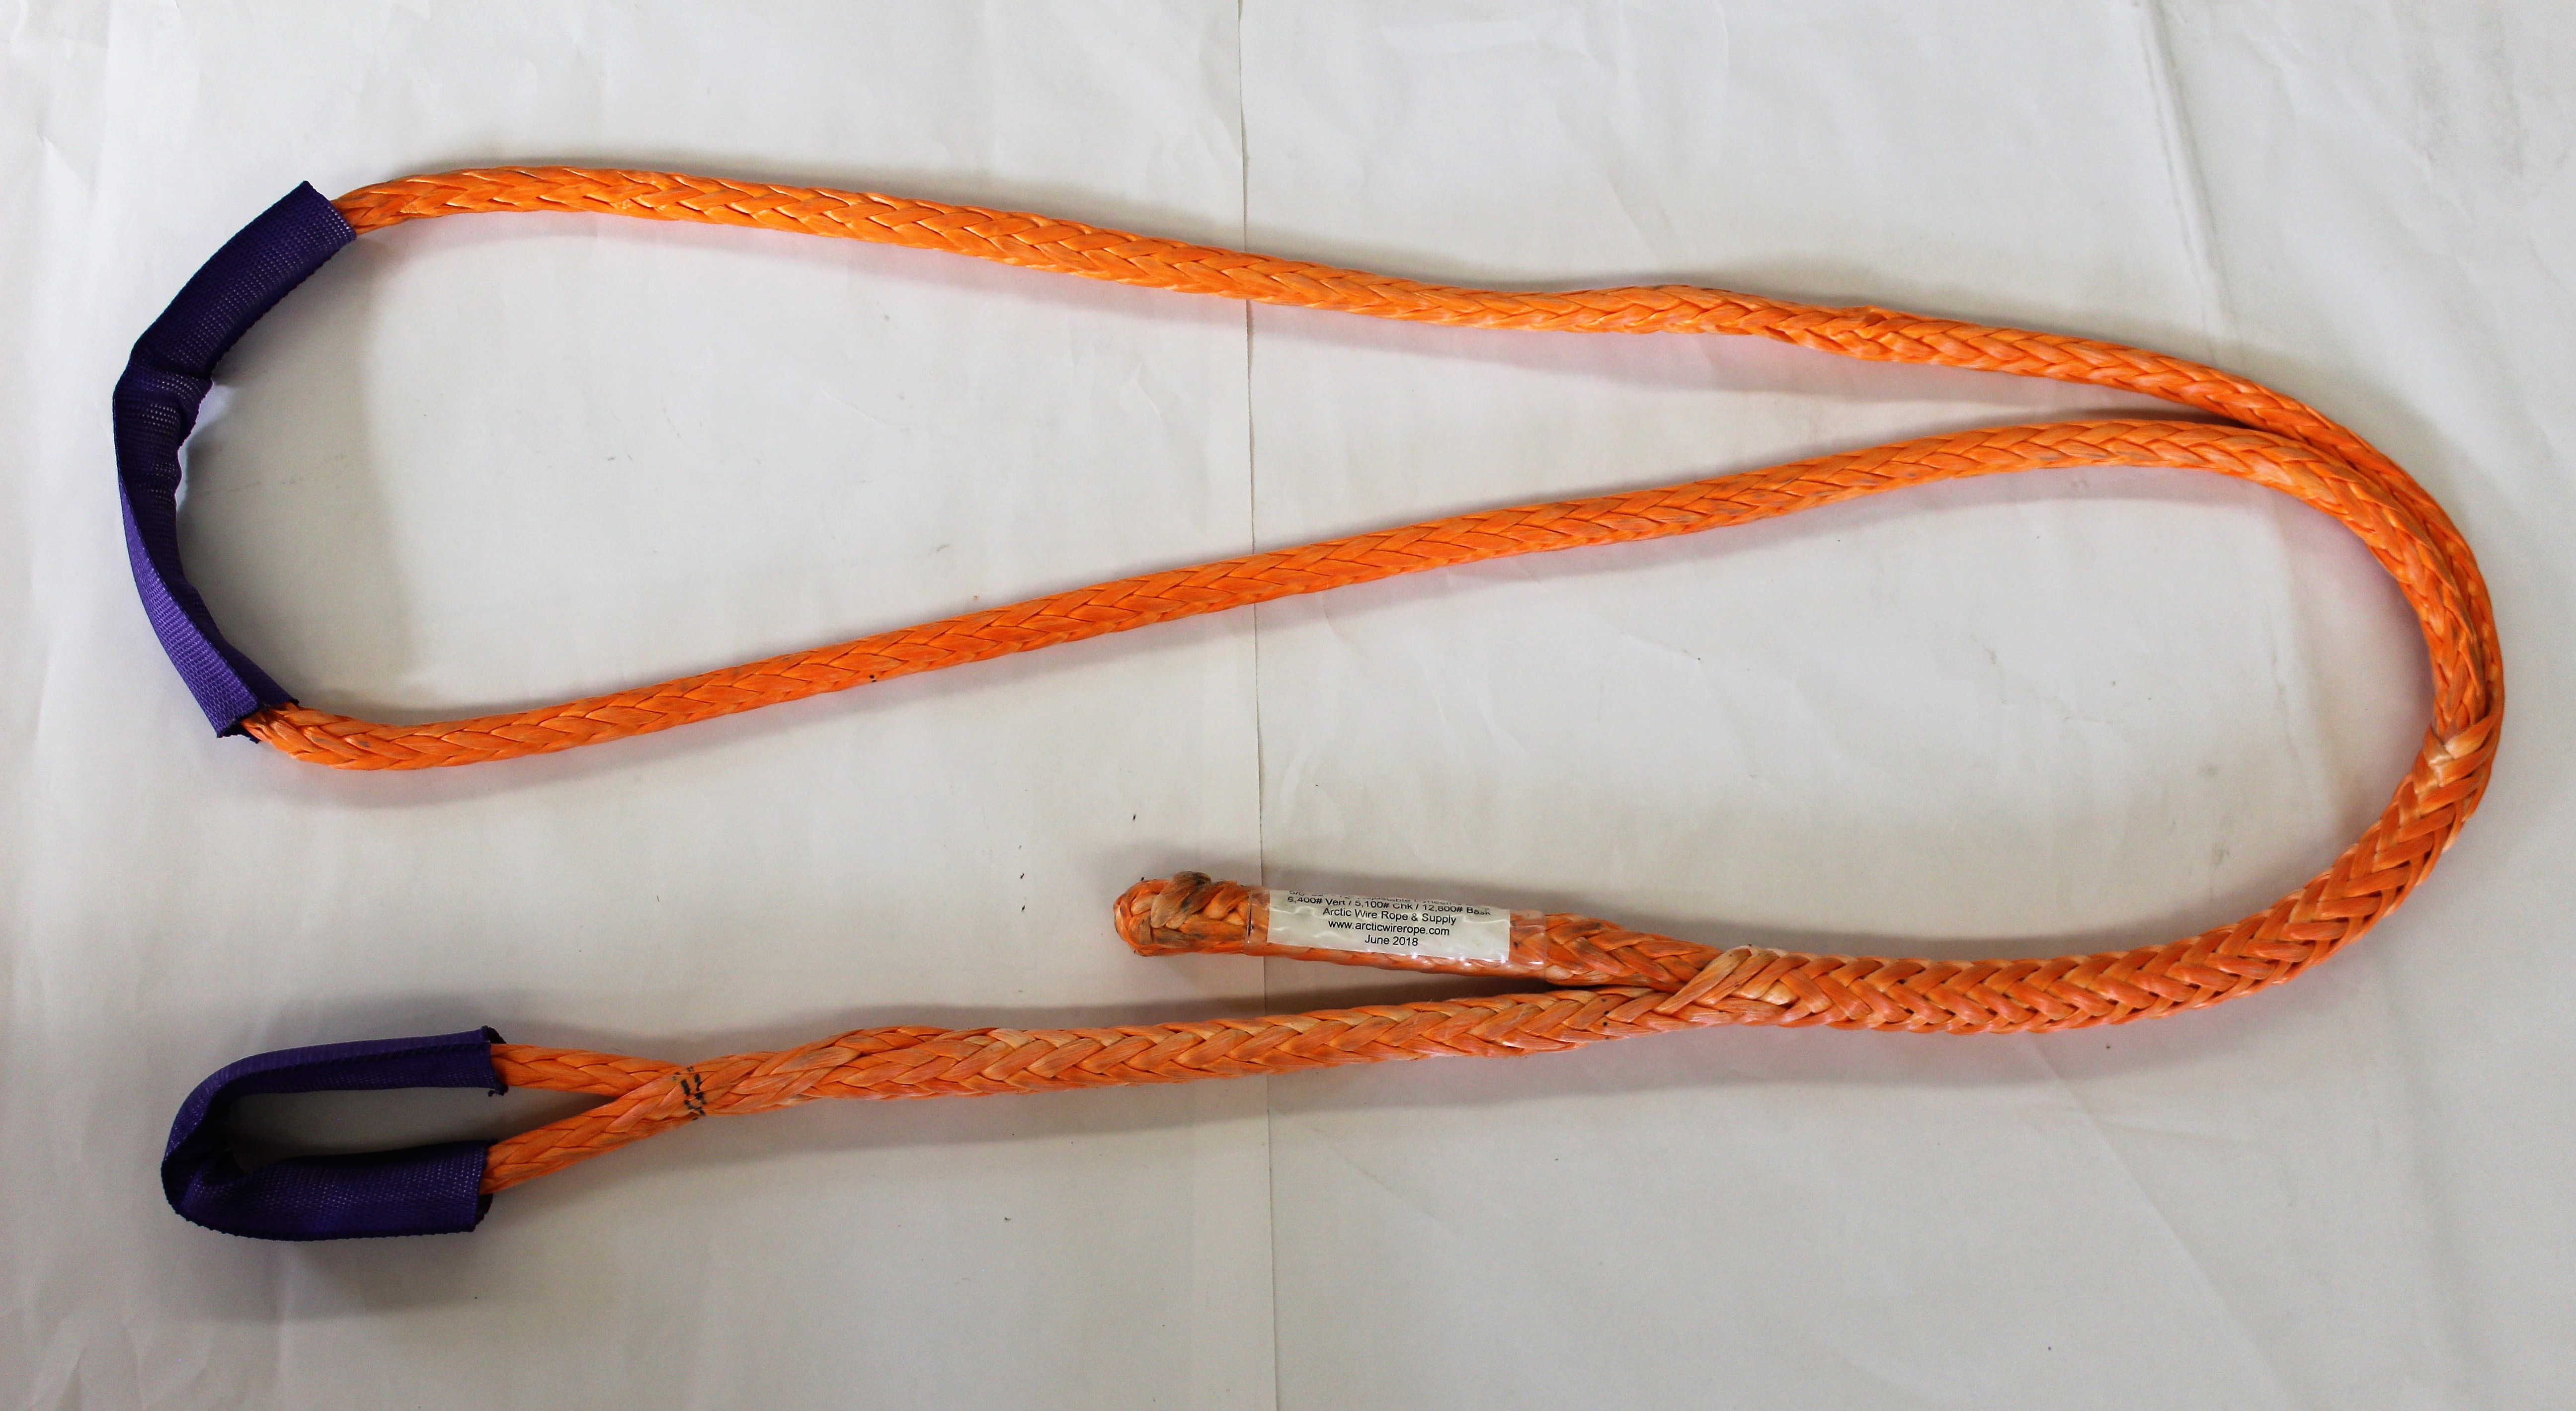 Adjustable Rope Slings, Single Leg - Adjustable Rope Slings, LIFT-IT Mfg.  Co. Inc.